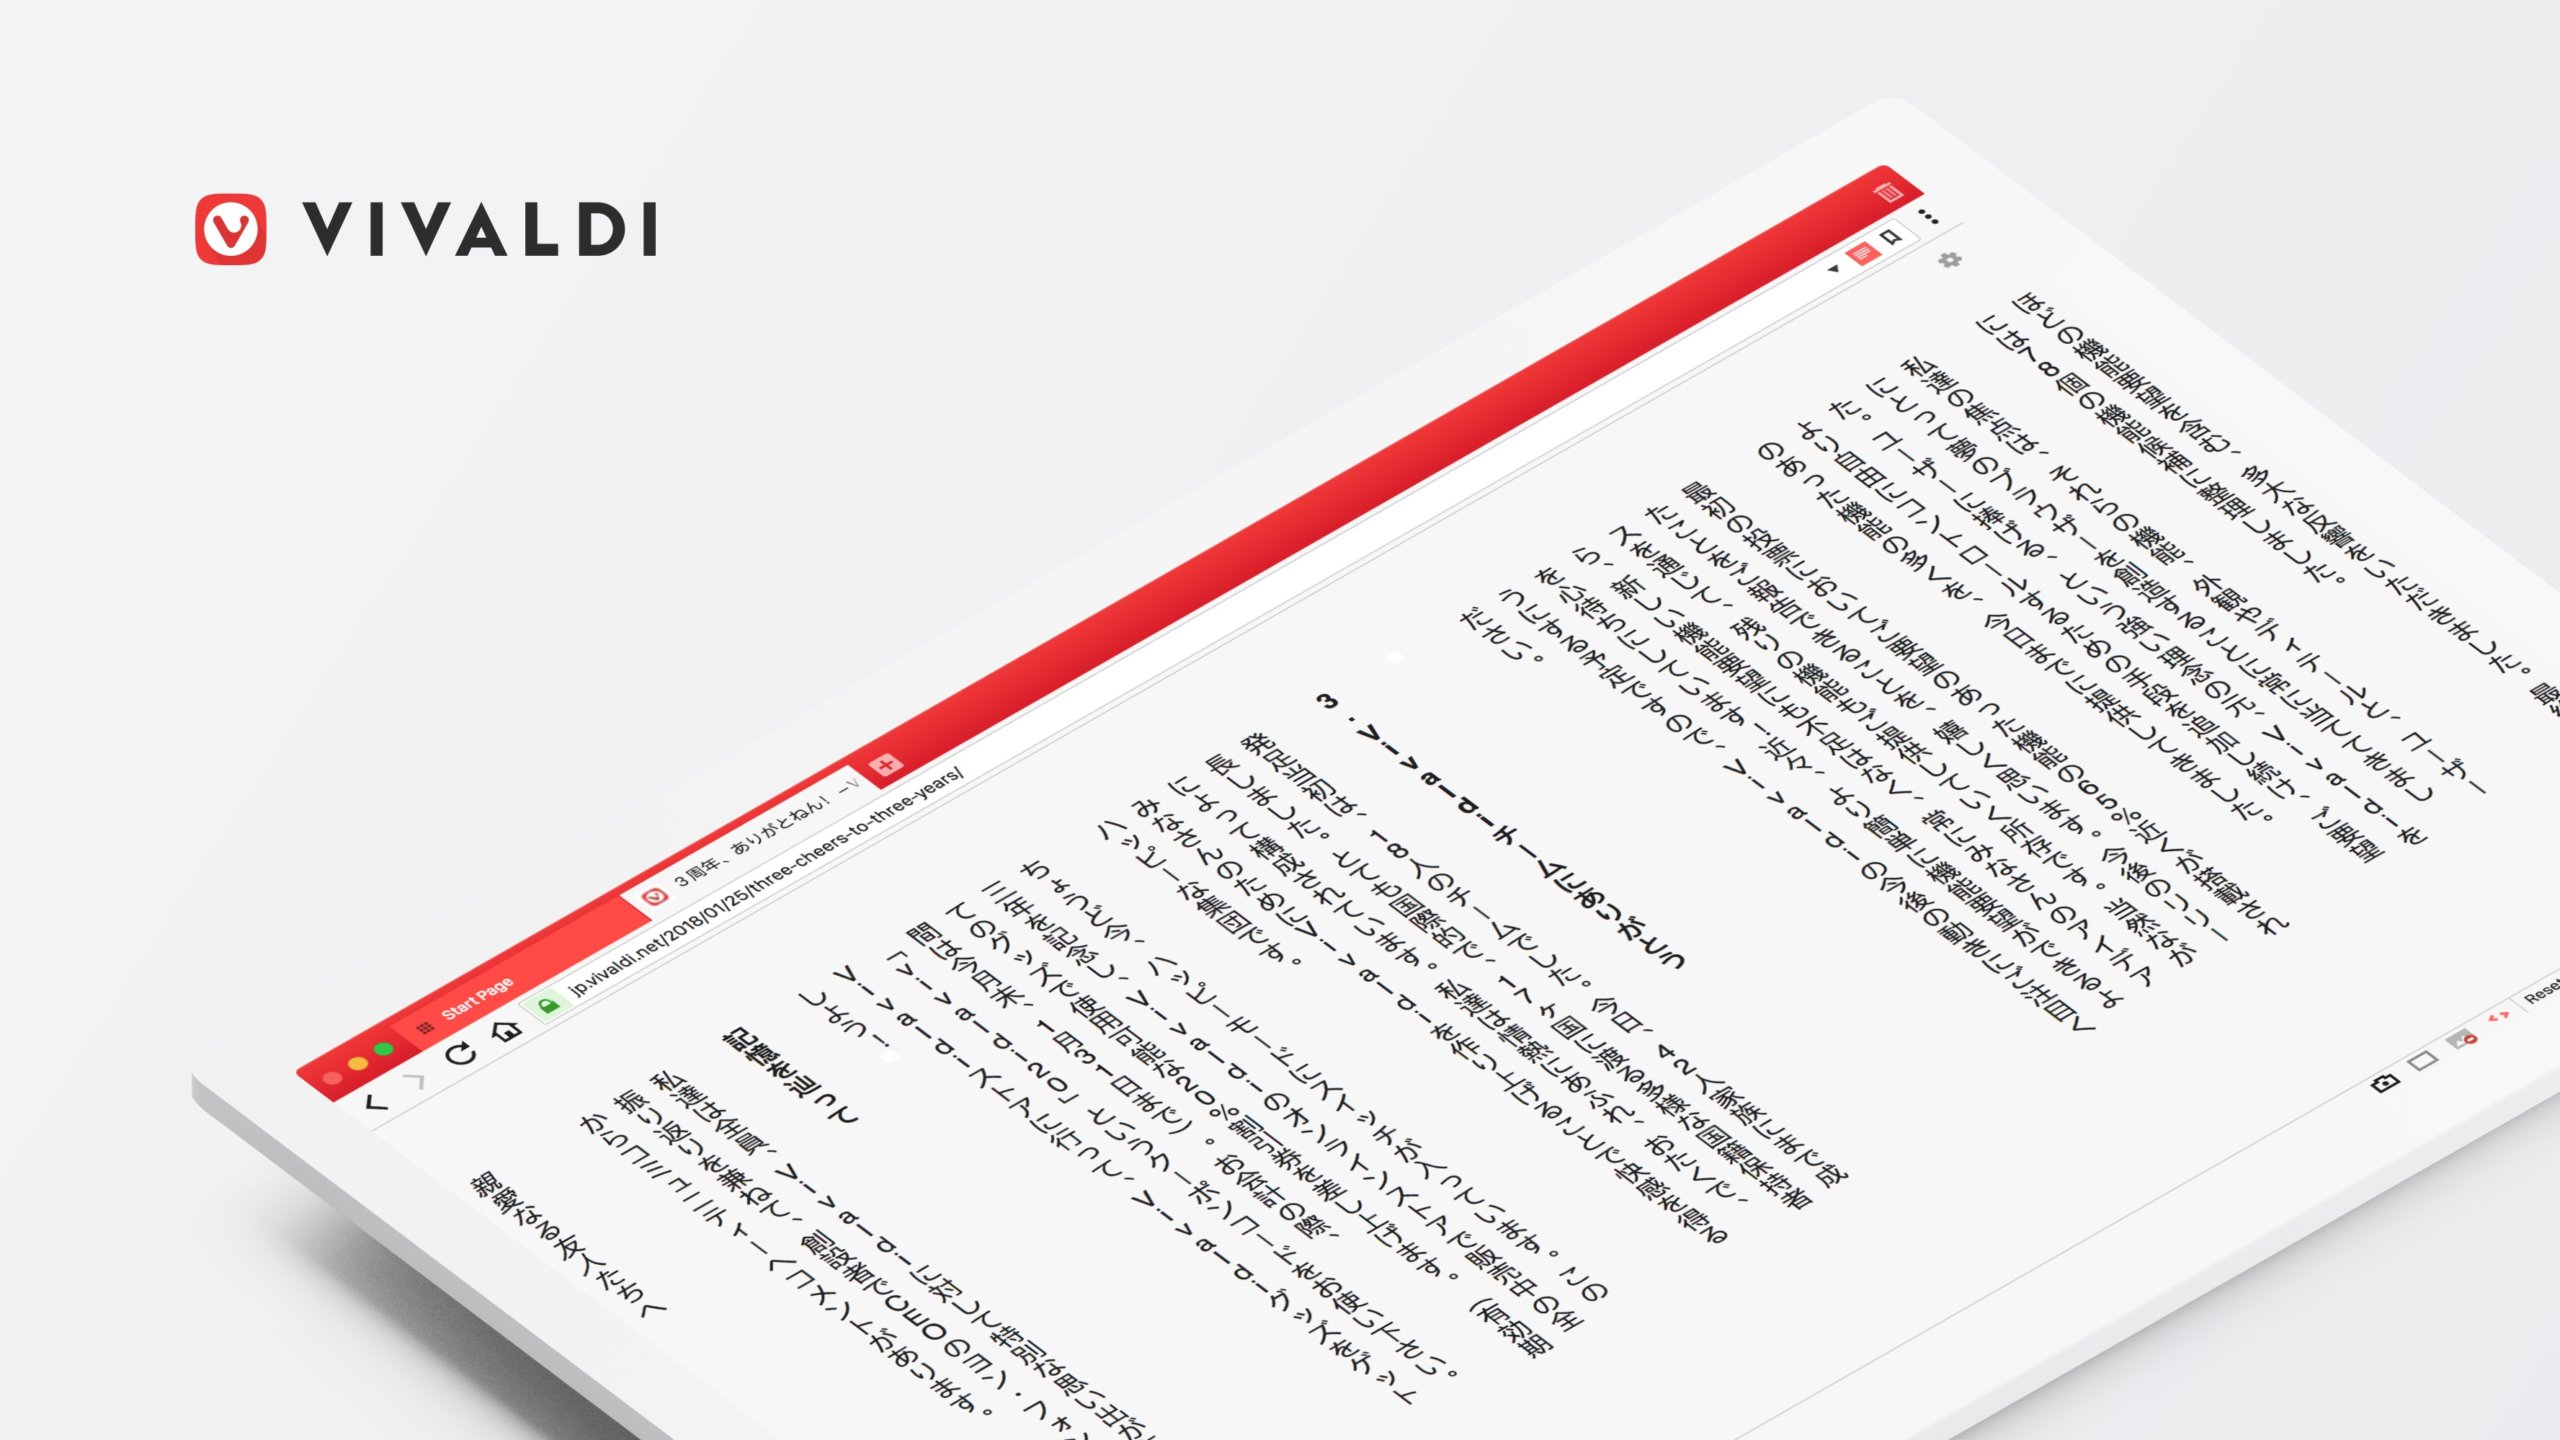 Vivaldi – pierwsza przeglądarka z pionowym widokiem czytania